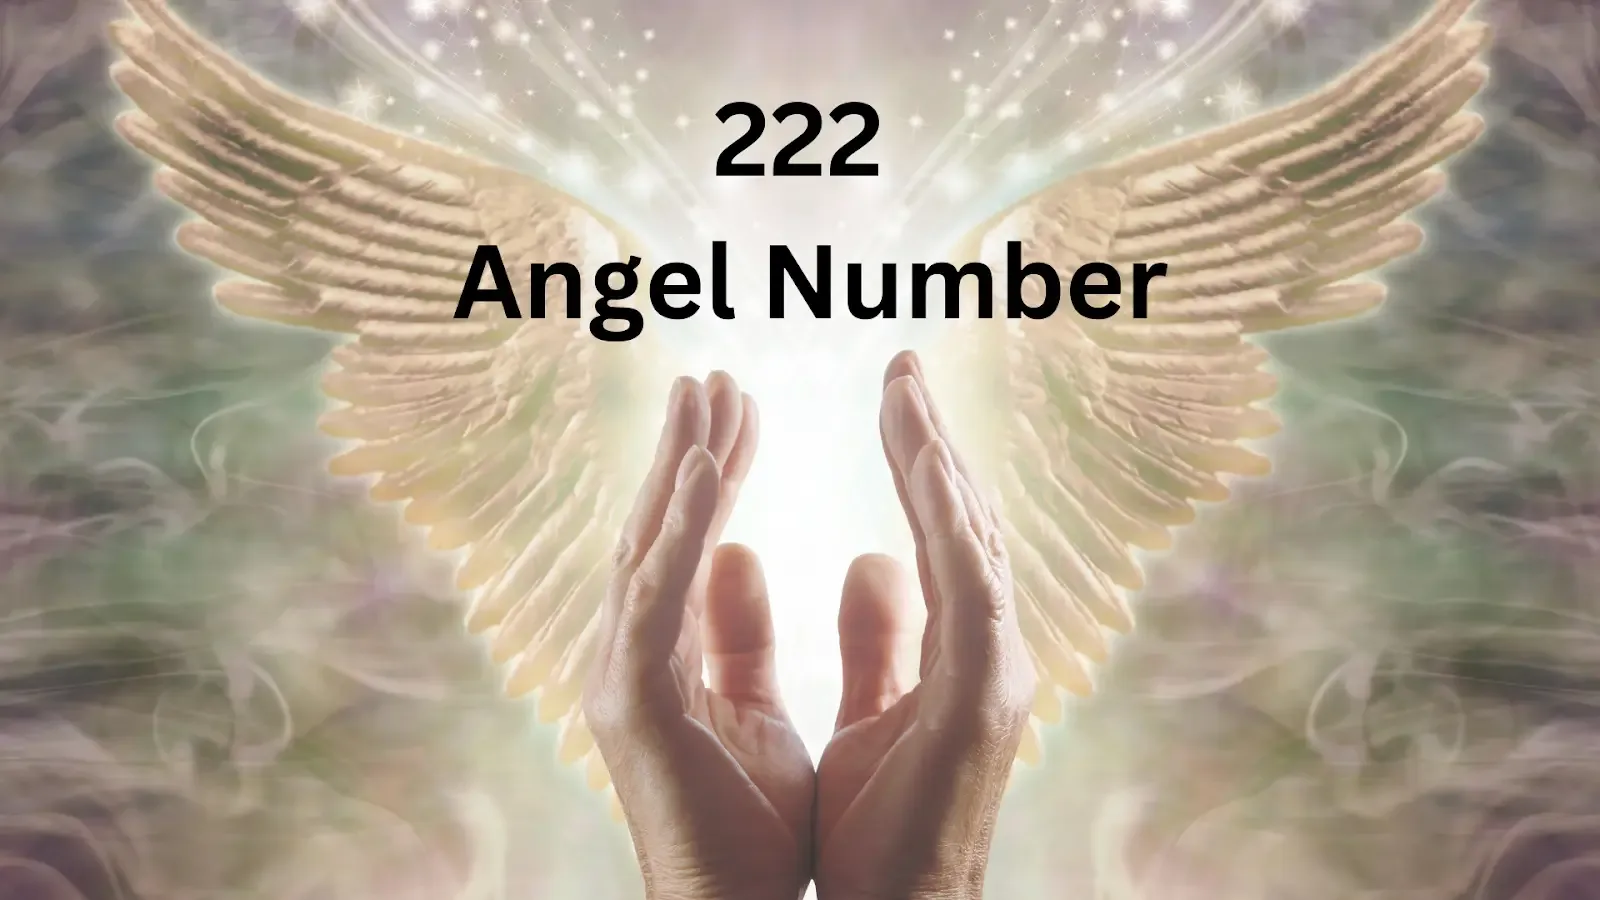 222 angel number